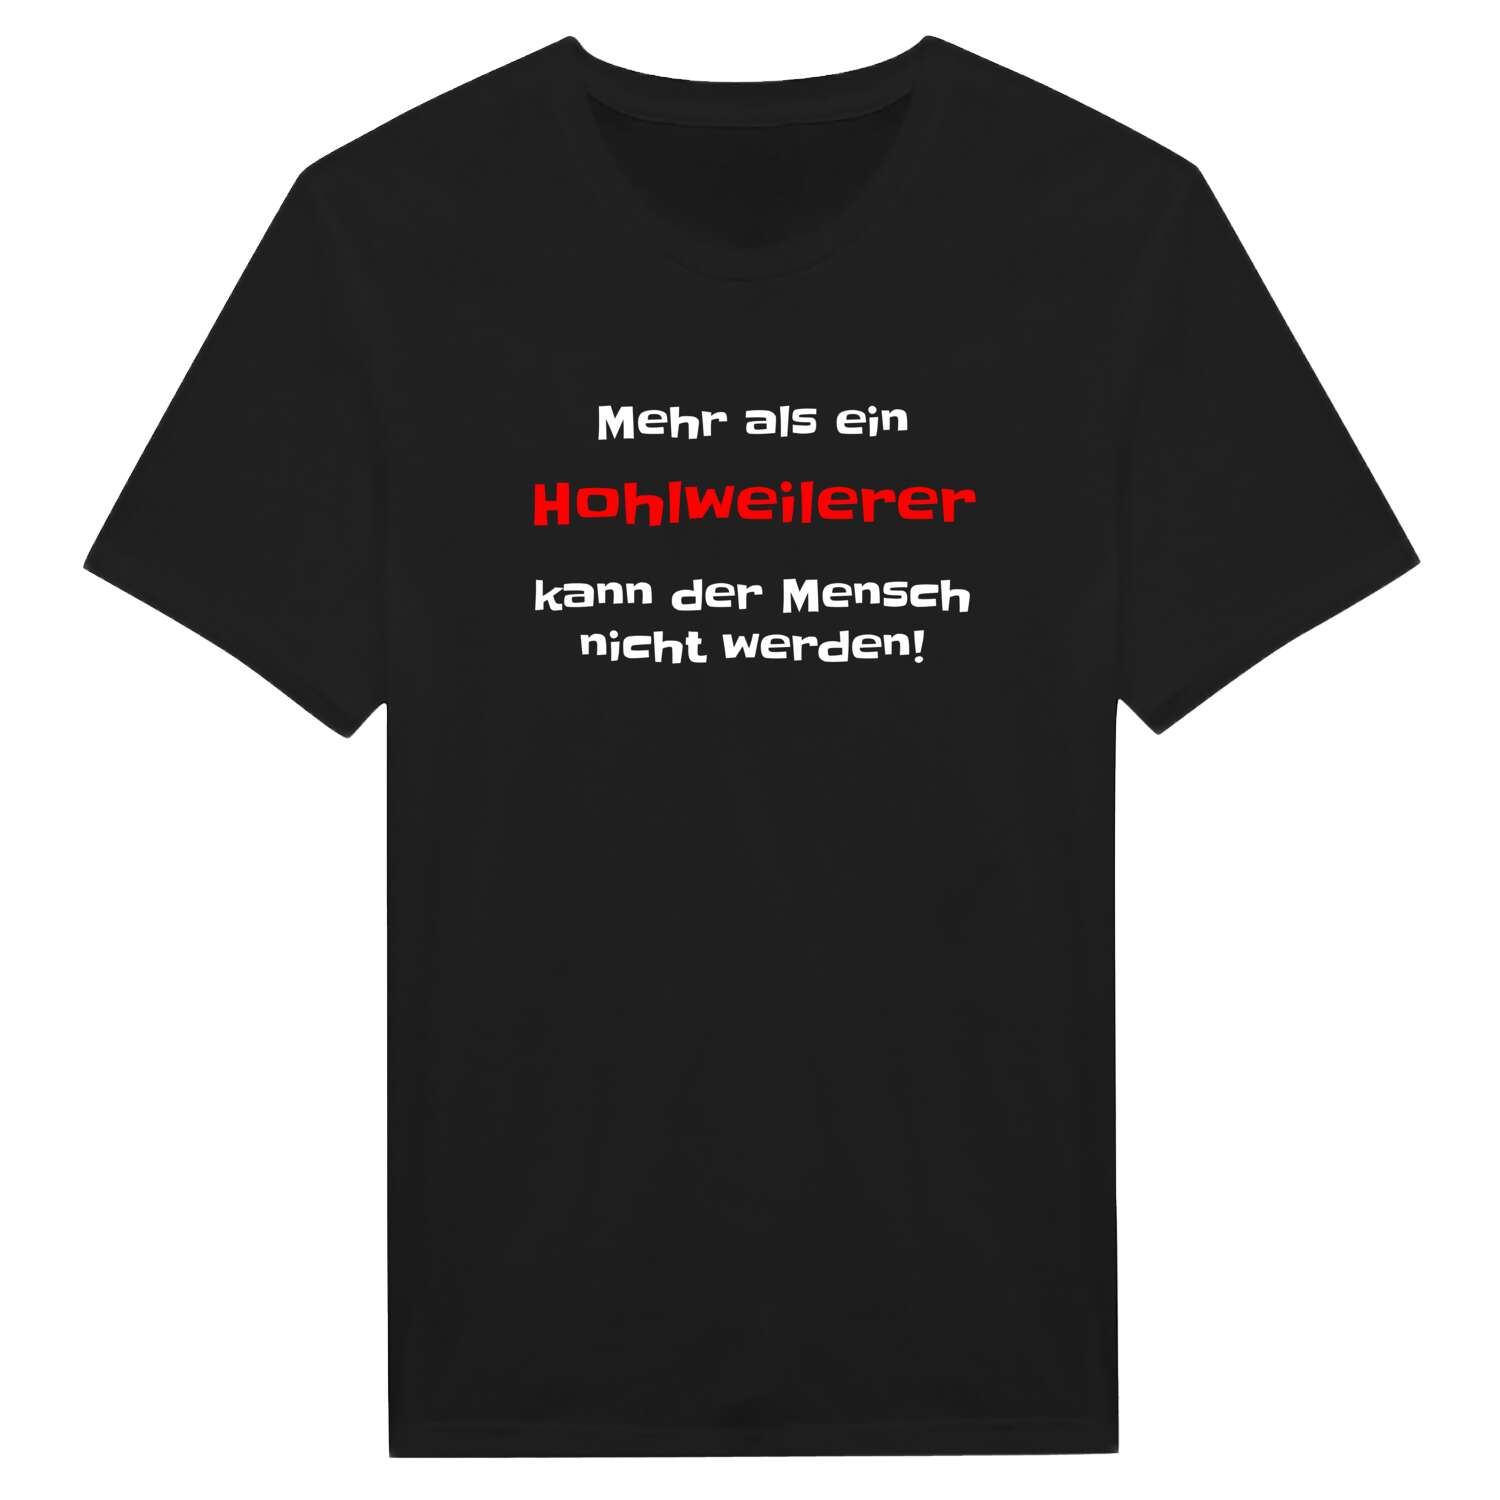 Hohlweiler T-Shirt »Mehr als ein«